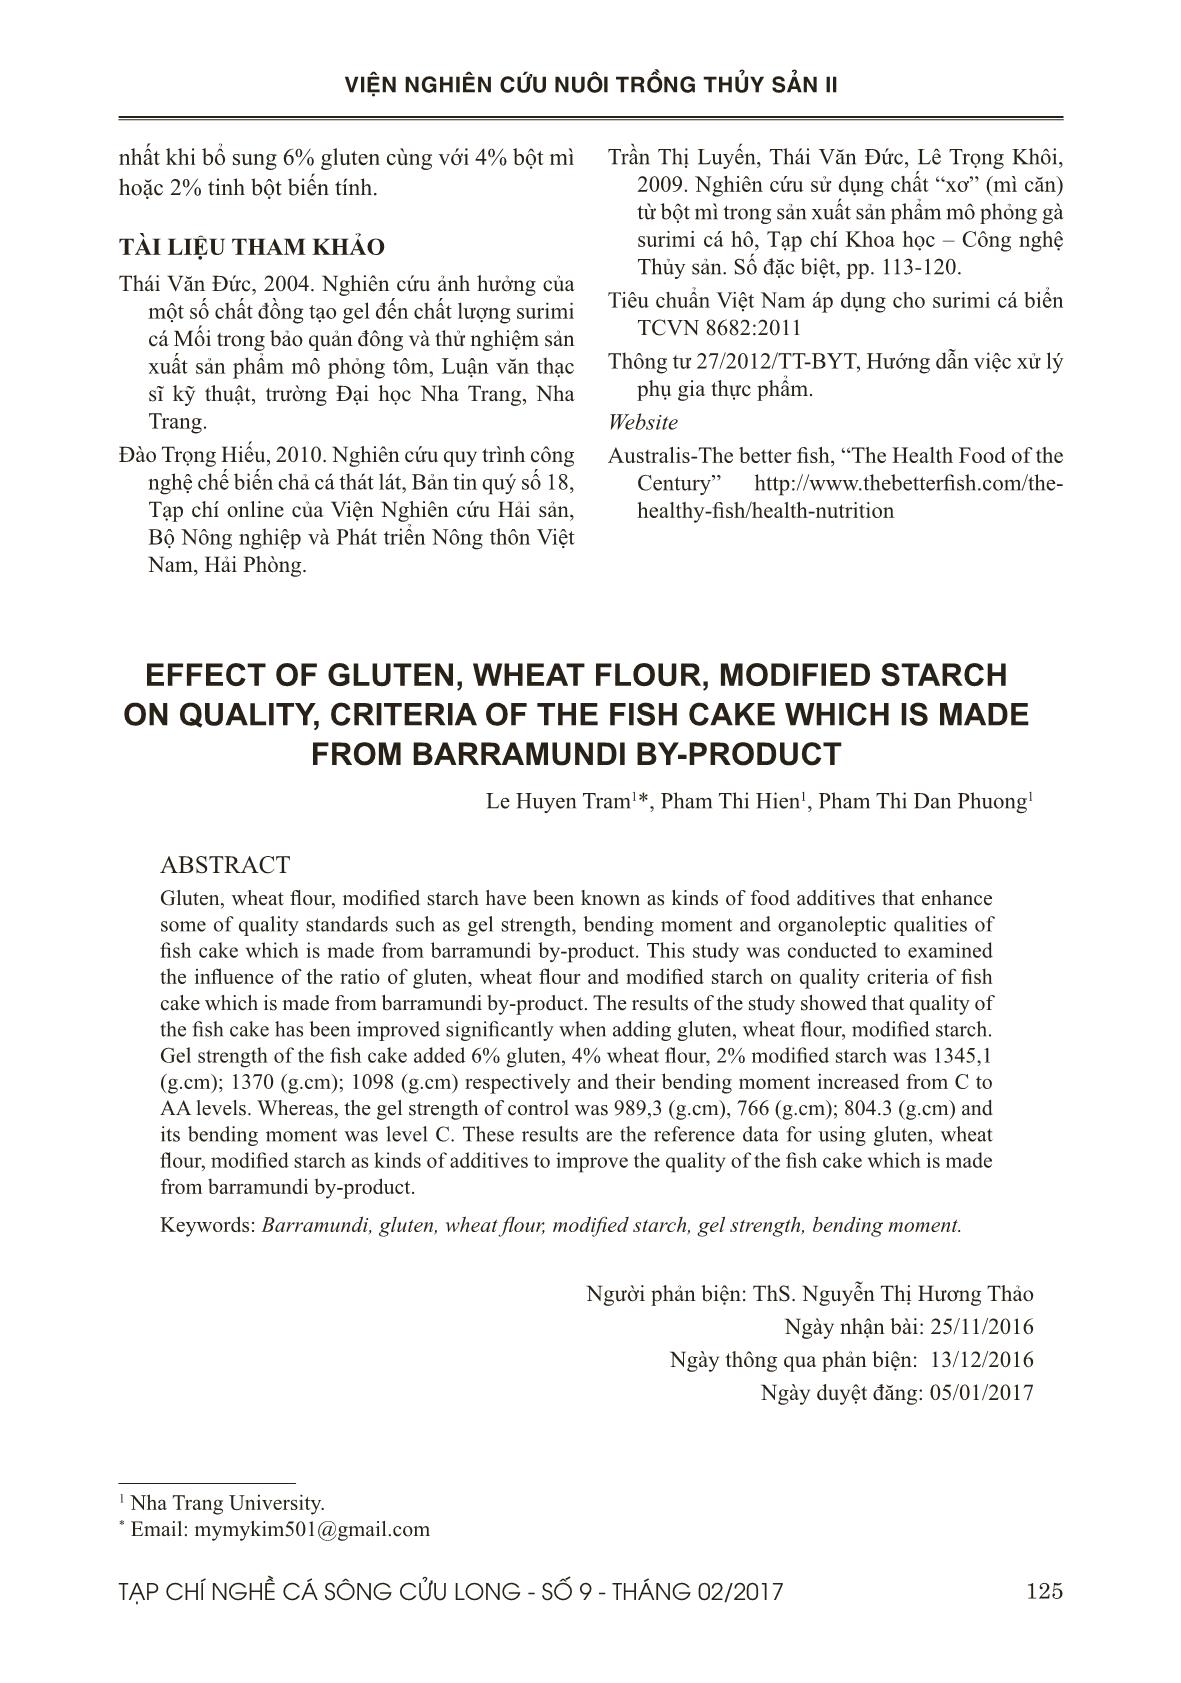 Ảnh hưởng của gluten, tinh bột biến tính, bột mì đến một số đặc tính của chả cá từ phụ phẩm cá chẽm trang 7